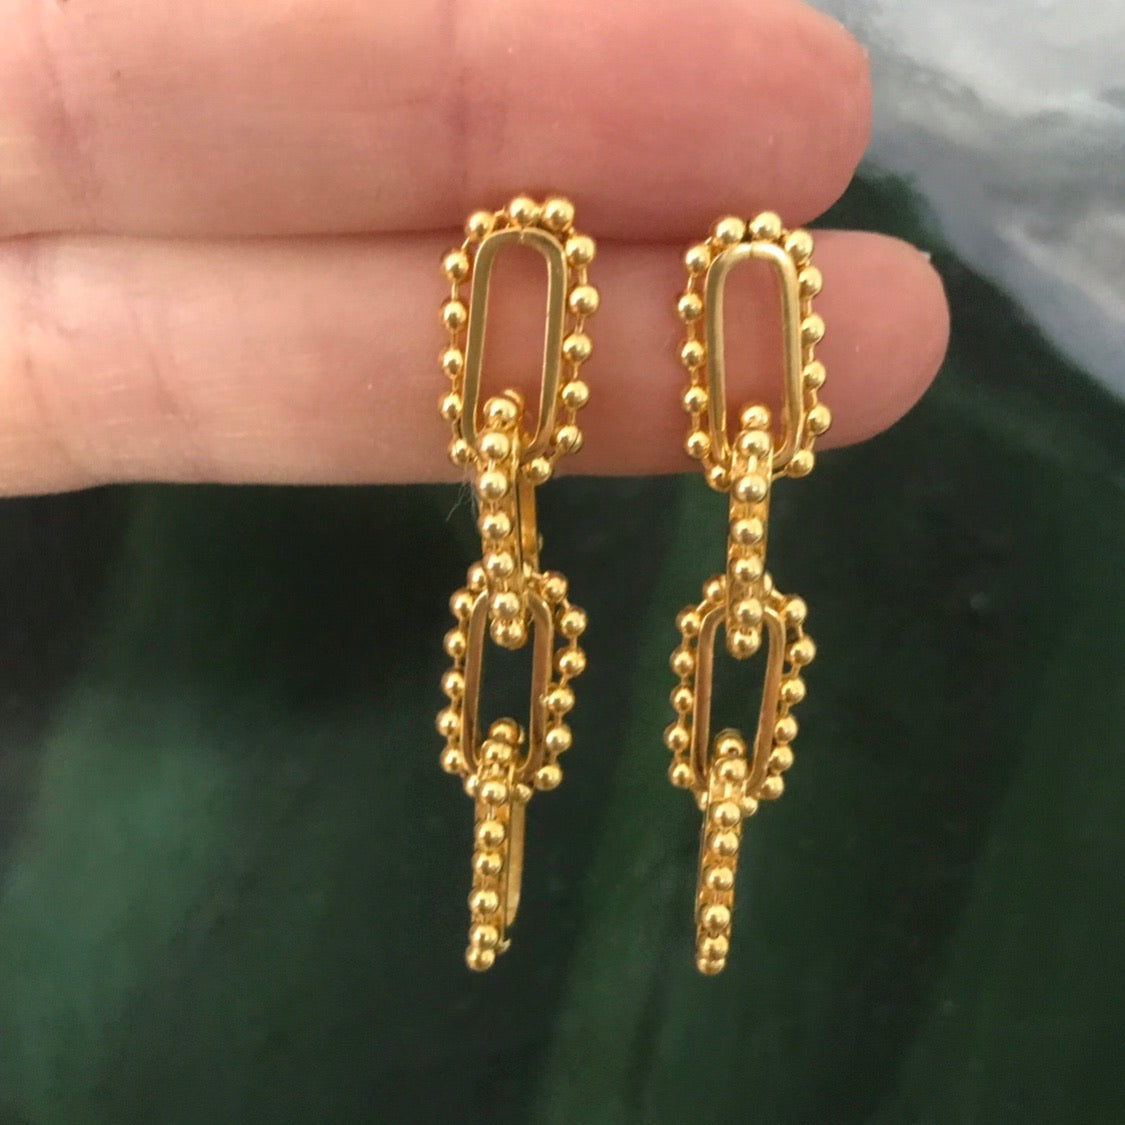 chain link drop earring